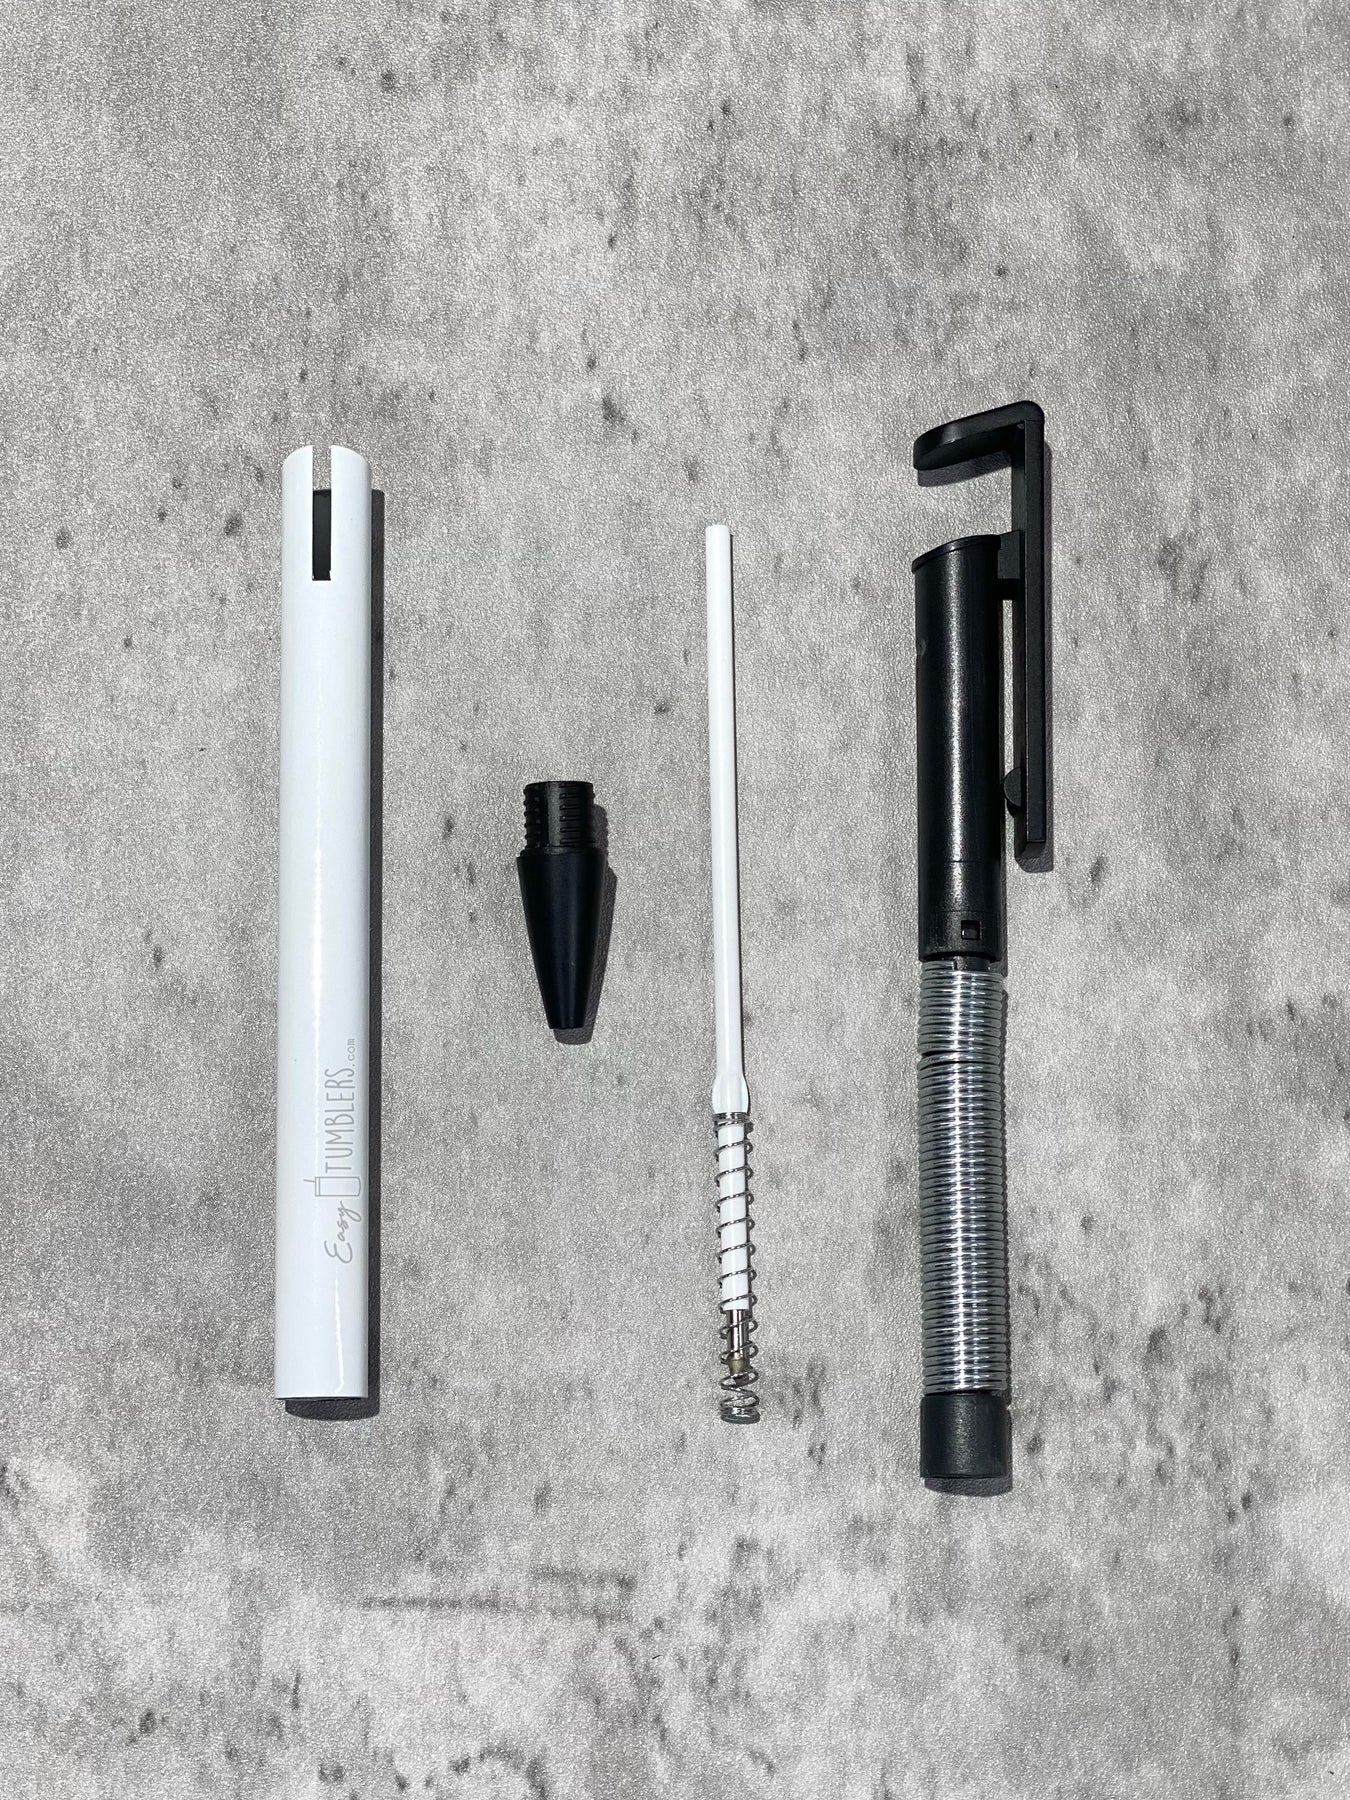 How to Sublimate Pens (Using Tumbler WrapsGenius) - Silhouette